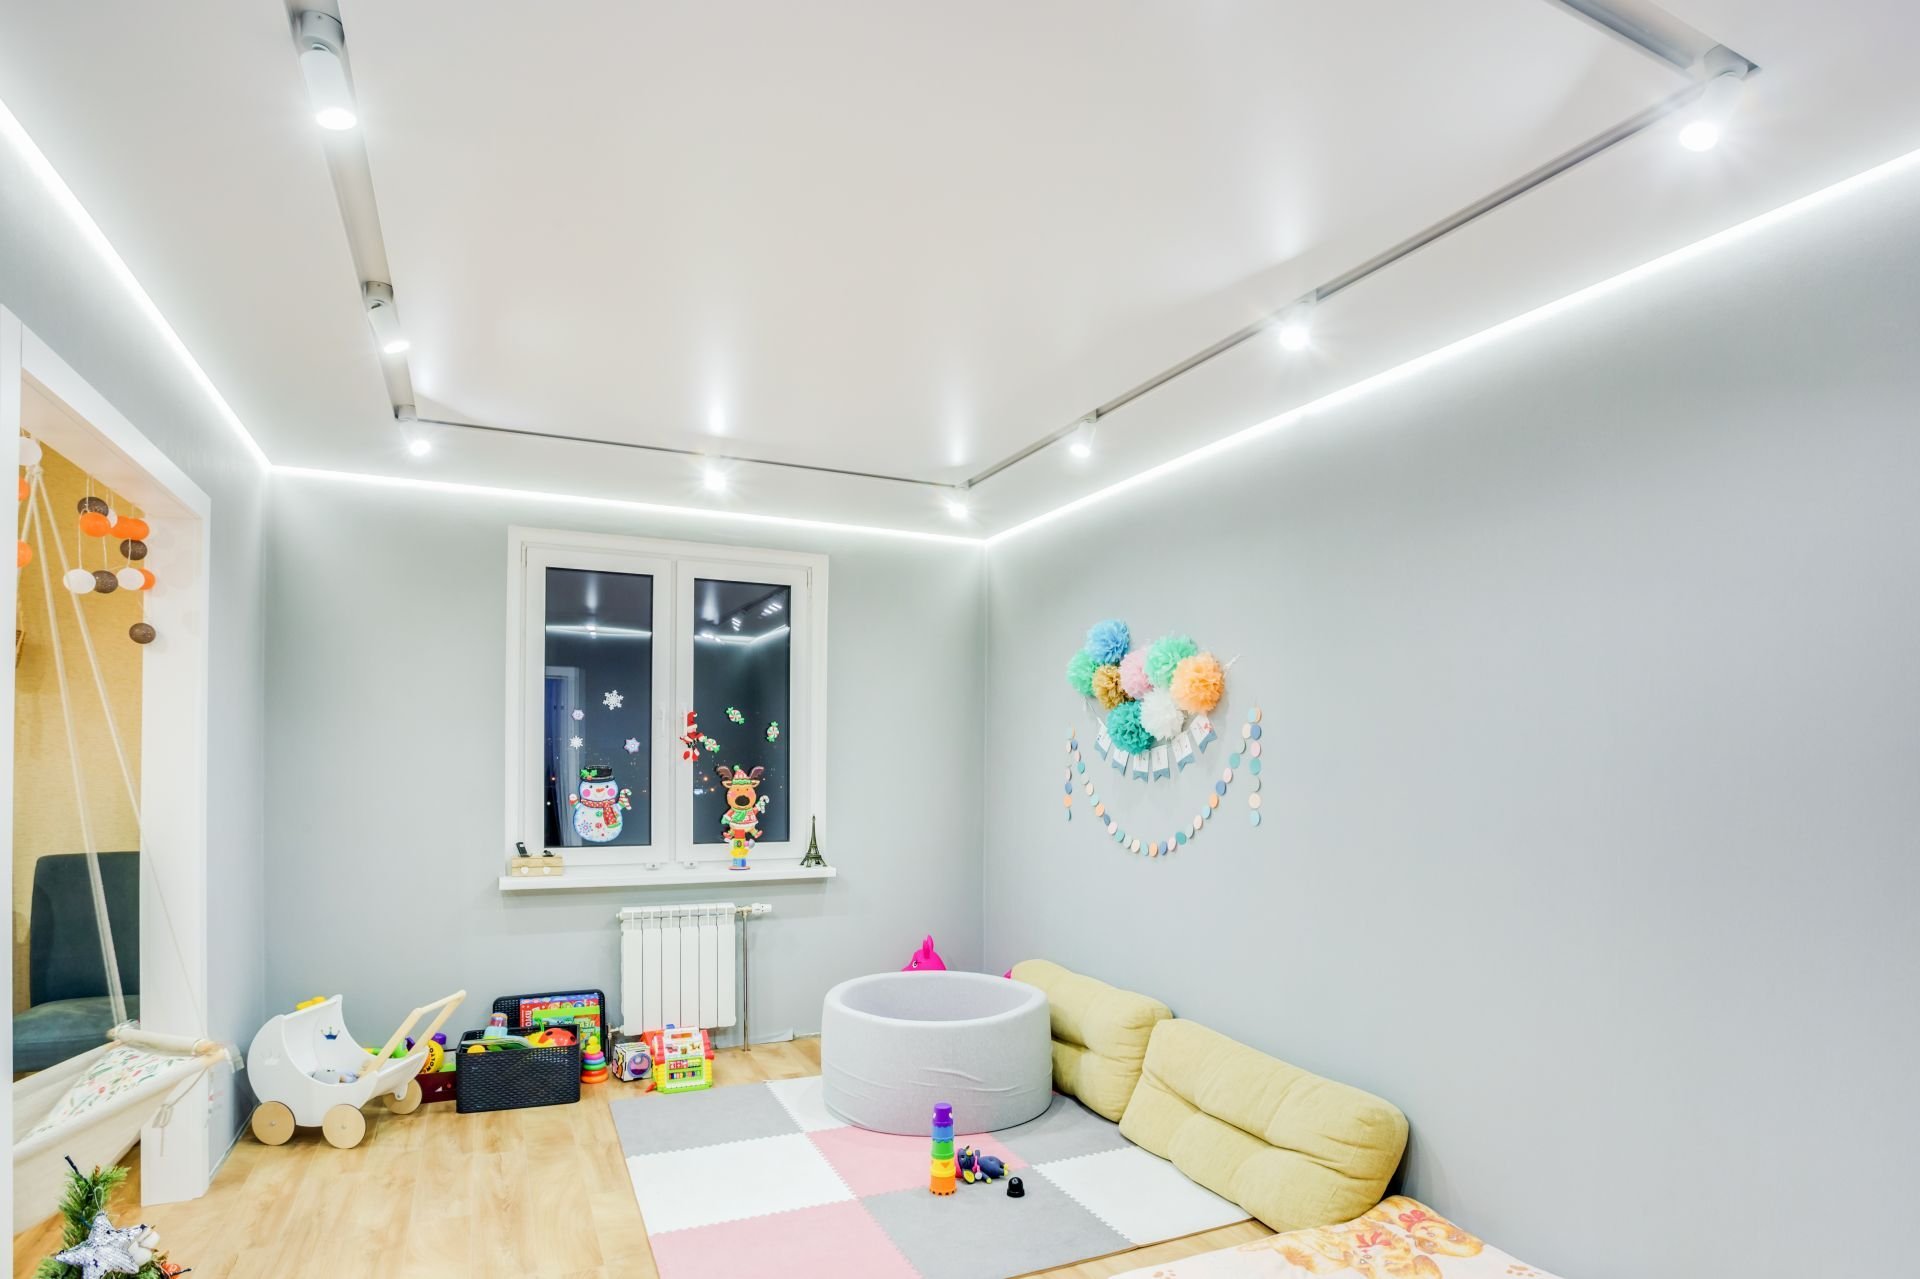 Потолок в детской комнате: фото вариантов дизайна и оформления натяжного потолка